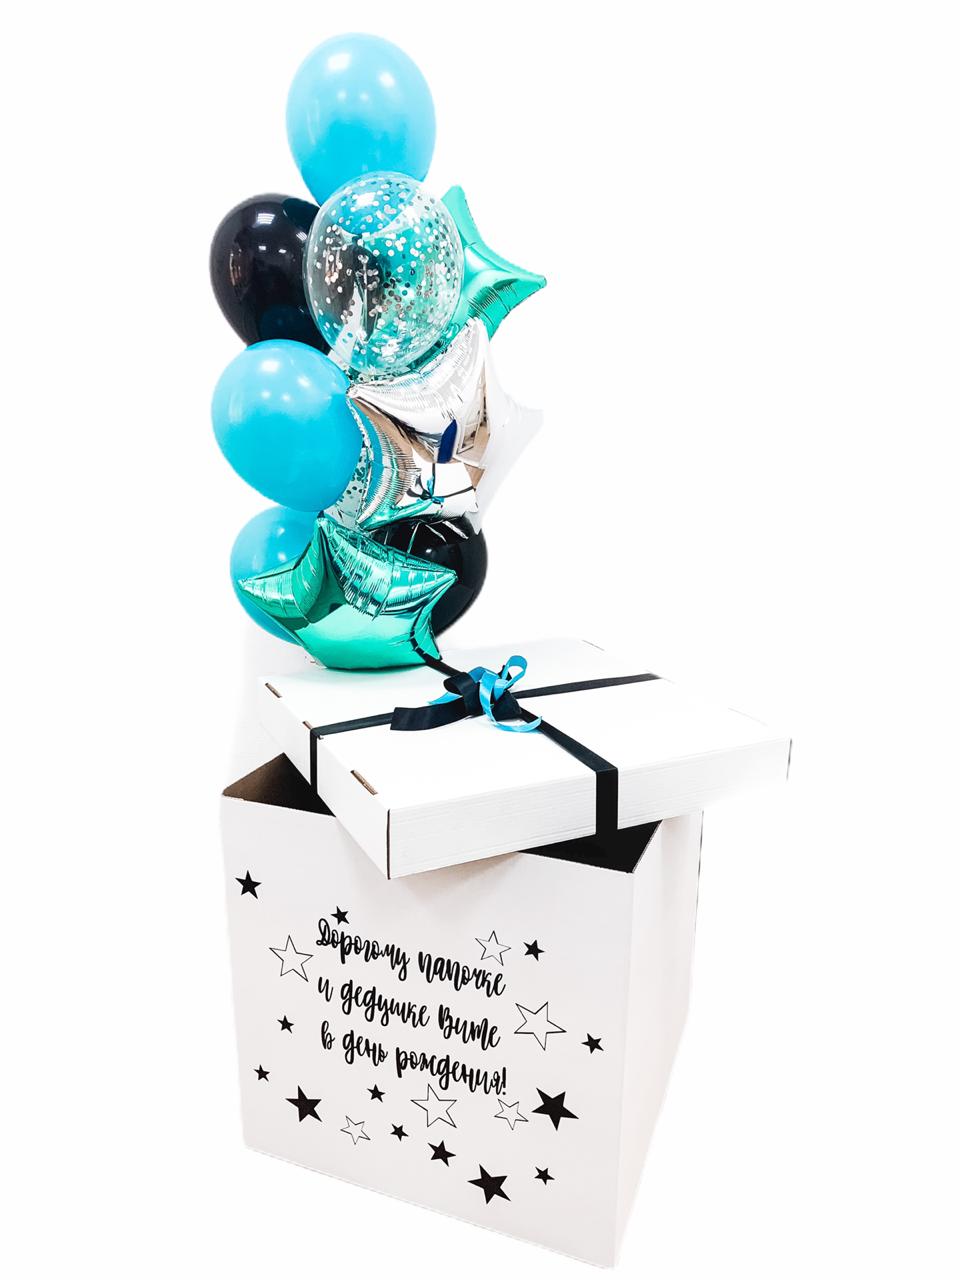 - Декорированная коробка
- 2 Шара с конфетти
- 3 Фольгированных звезды 45см
- 5 Однотонных шаров
- Утяжелитель